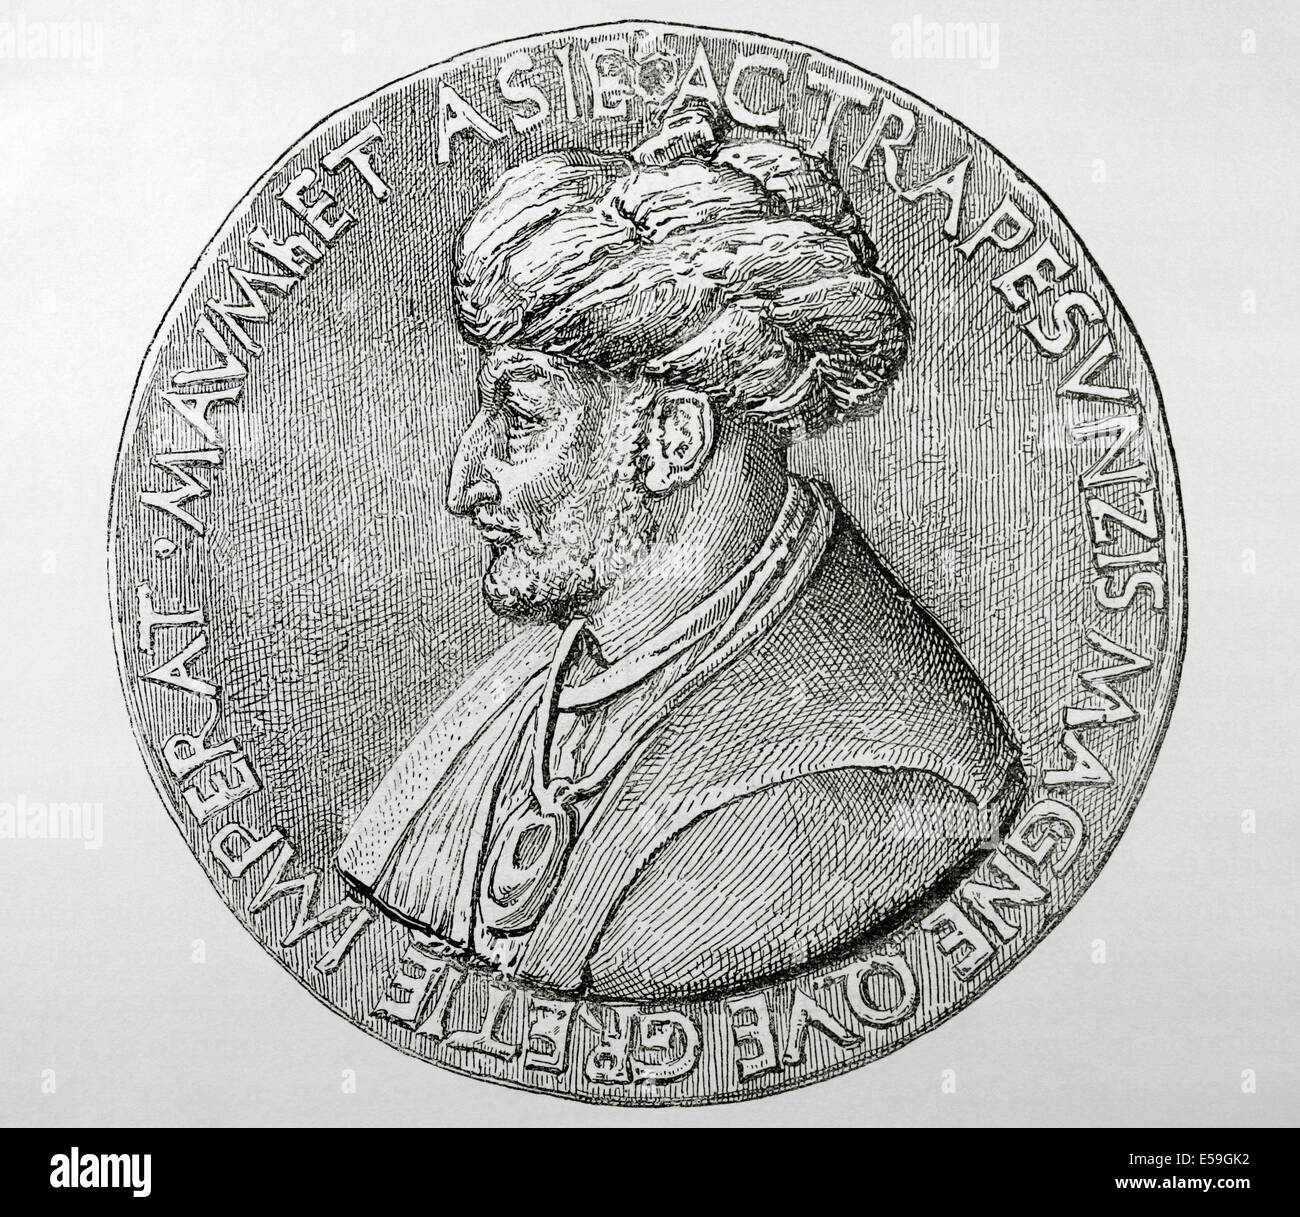 Mehmet III (1429-1481). Bagno turco sultano ottomano (1451-1481). Conquistarono Costantinopoli. Incisione. Foto Stock